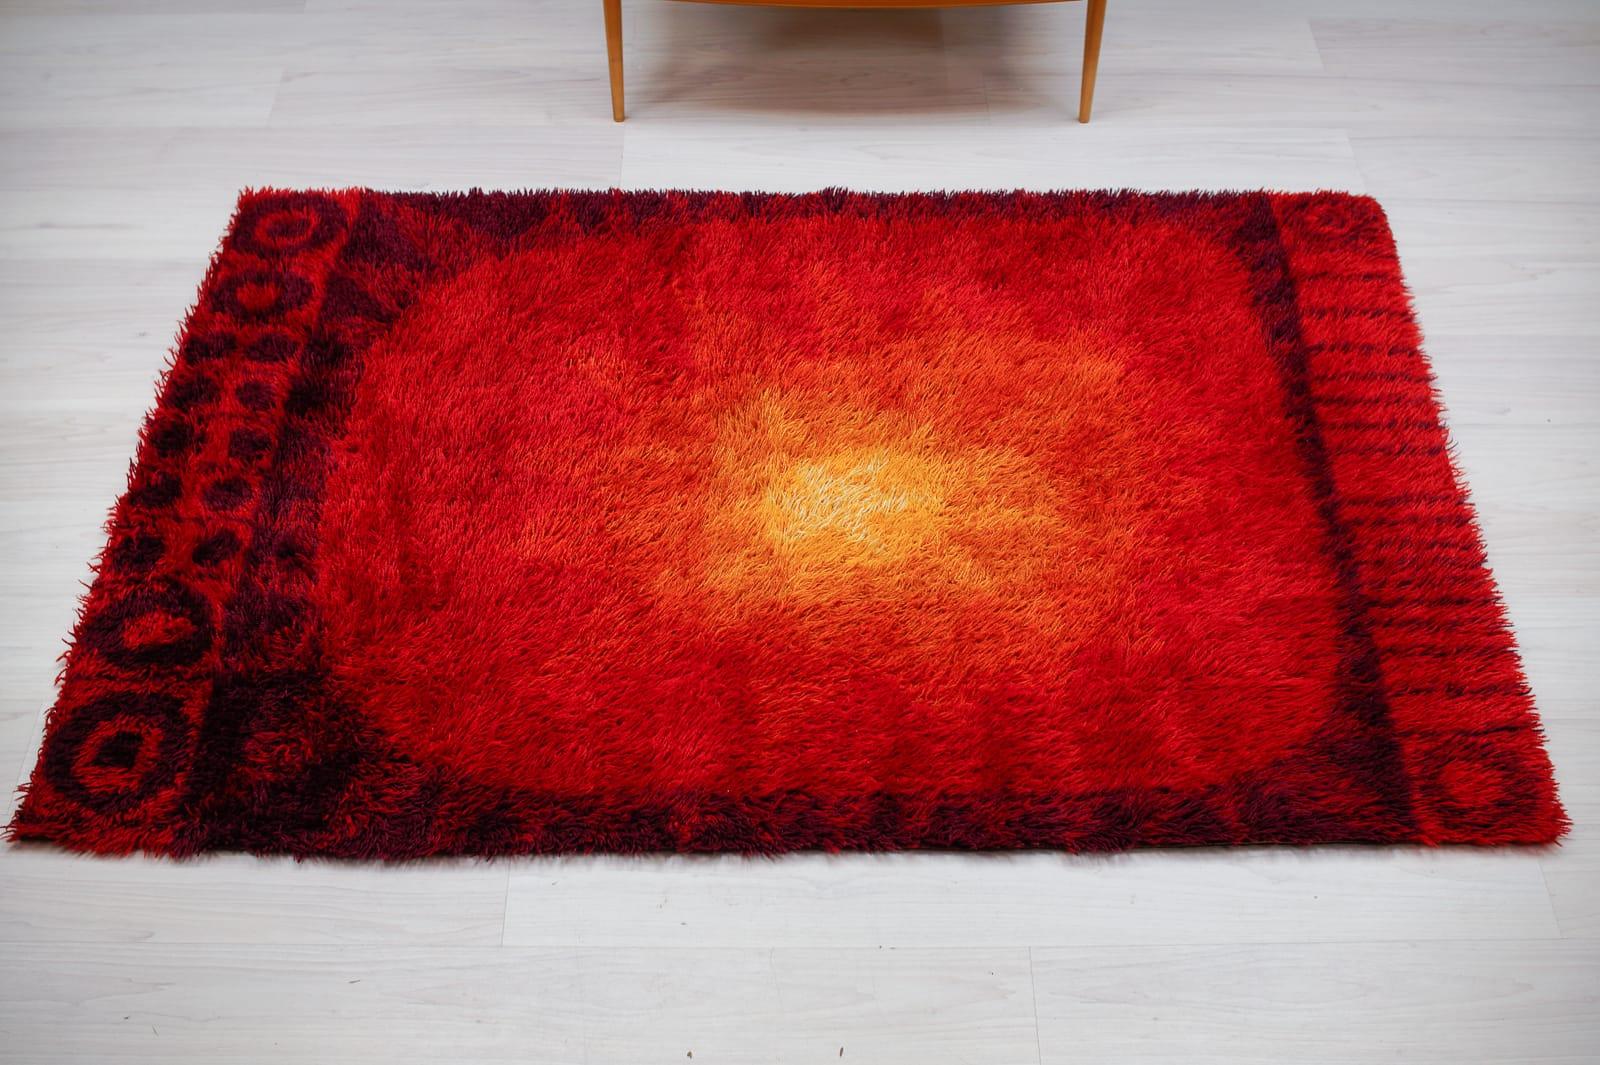 Superbe tapis en laine de l'ère spatiale, fabriqué à la main dans les années 1970 en Allemagne.

A été nettoyé professionnellement. La couleur brille d'une beauté incroyable. Un superbe tapis des années 1970 en très bon état.